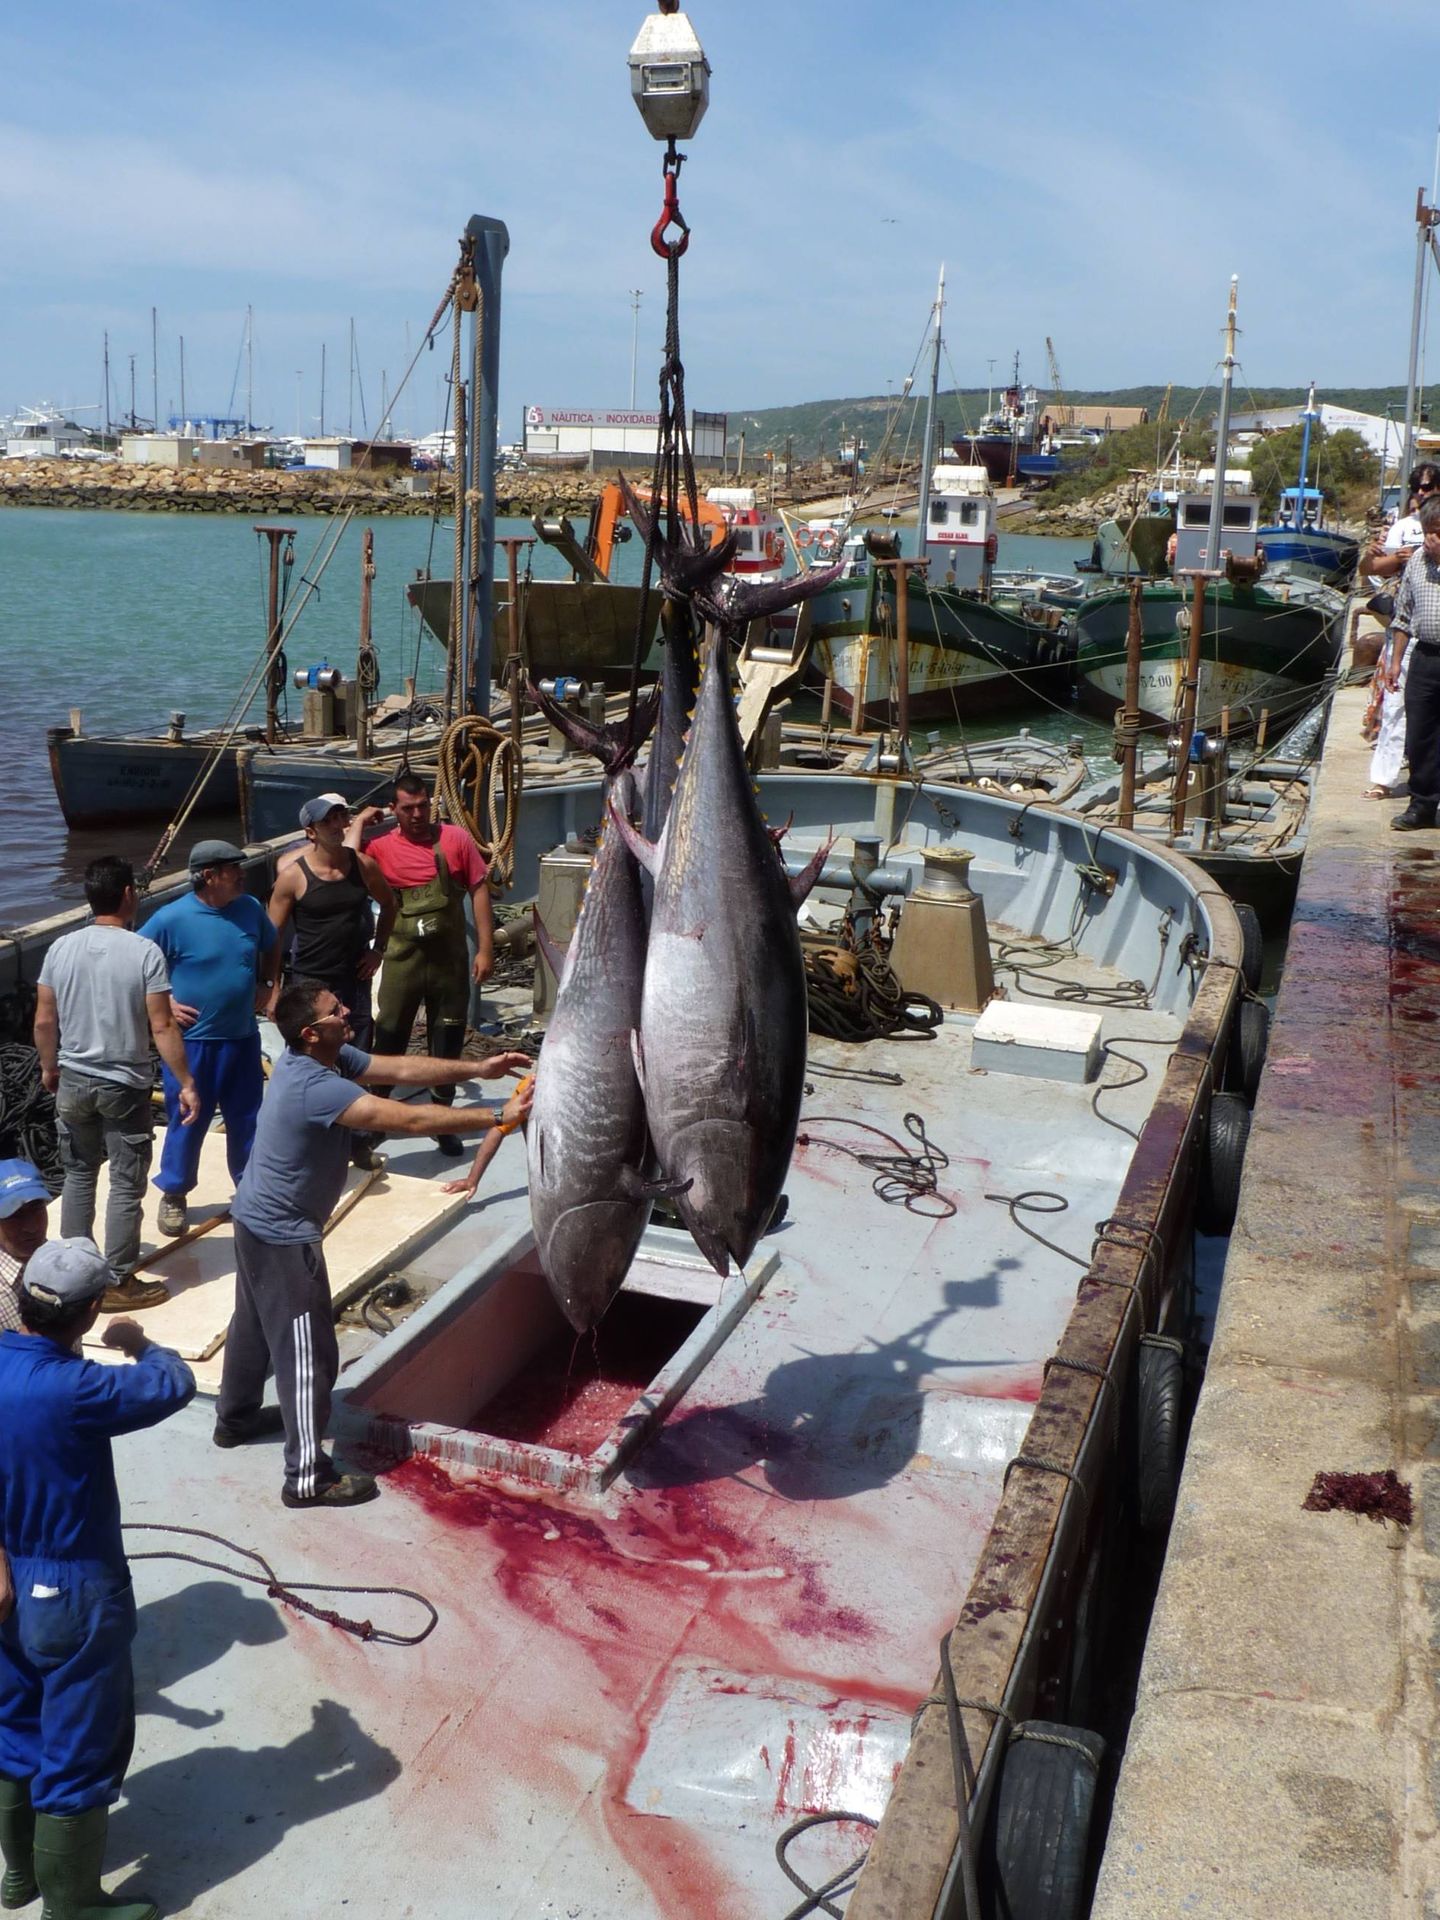 Descarga de atún rojo en Barbate tras la matanza en la almadraba. (M. García Rey / ICIJ)